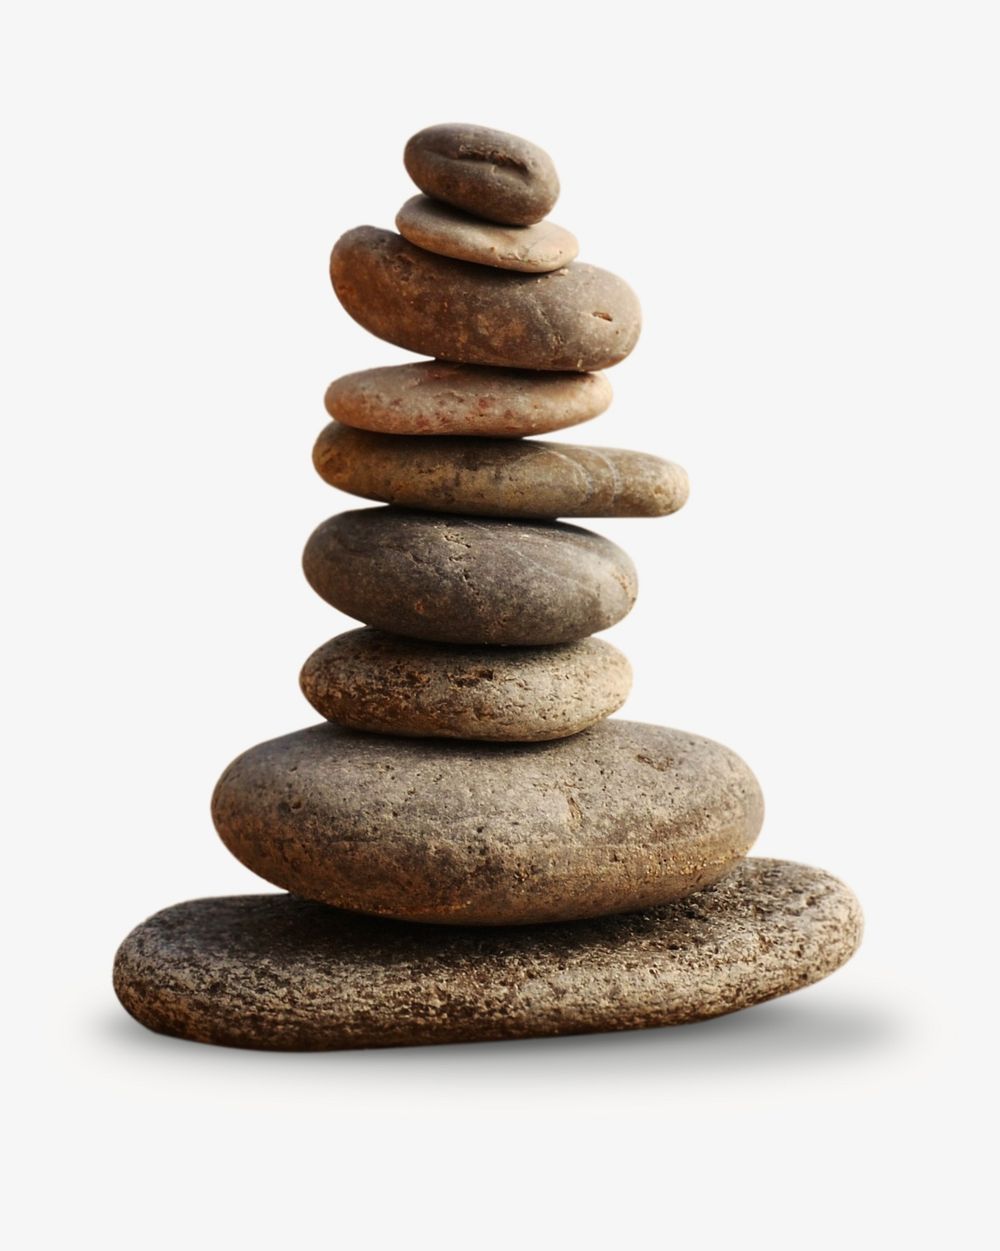 Balancing stones image on white